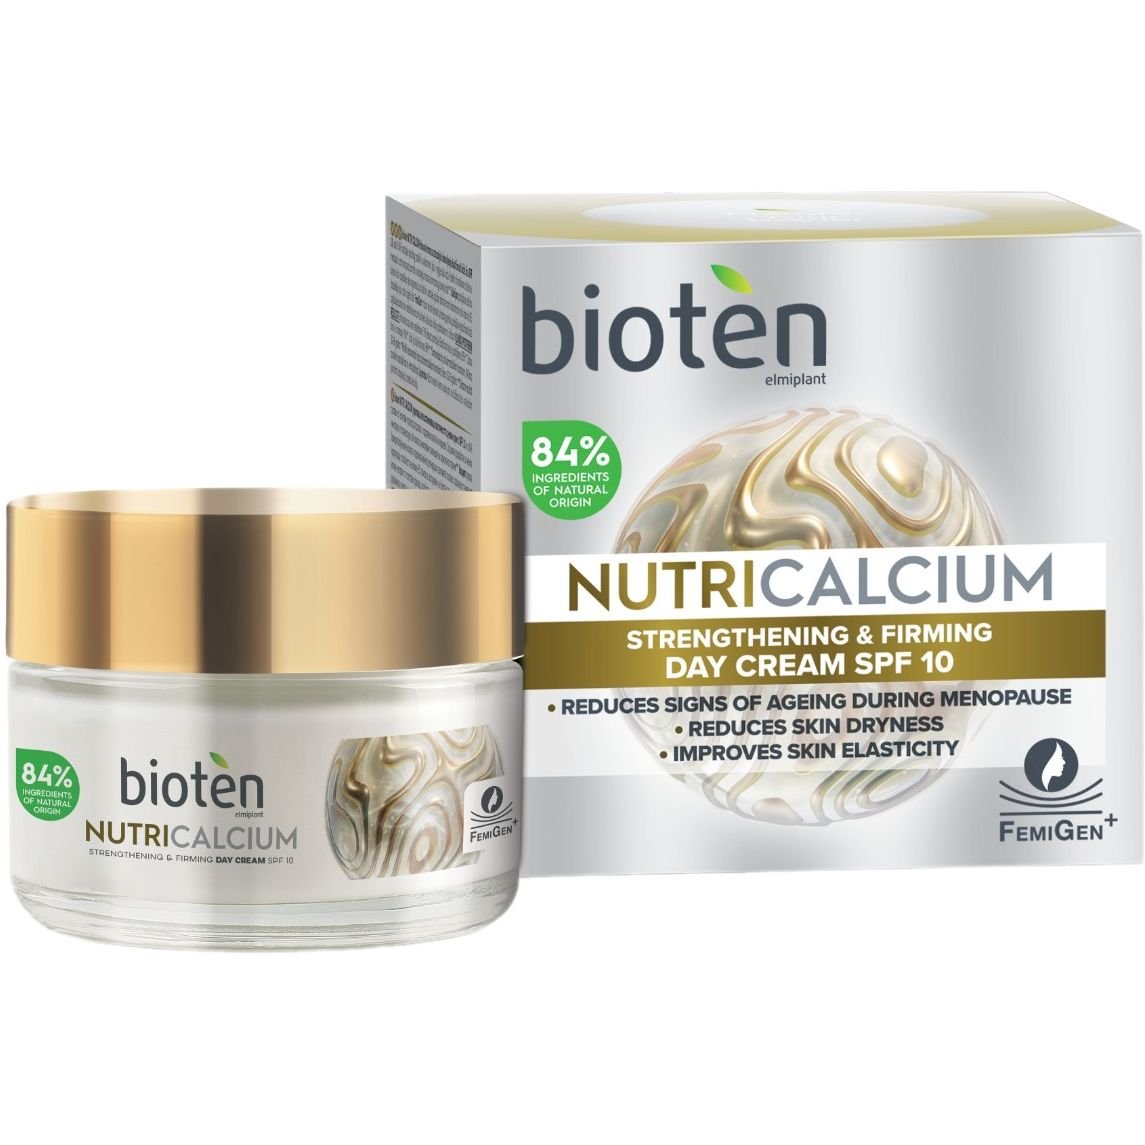 Укрепляющий дневной крем для лица Bioten Nutri Calcium Strengthening & Firming Day Cream SPF 10 50 мл - фото 1